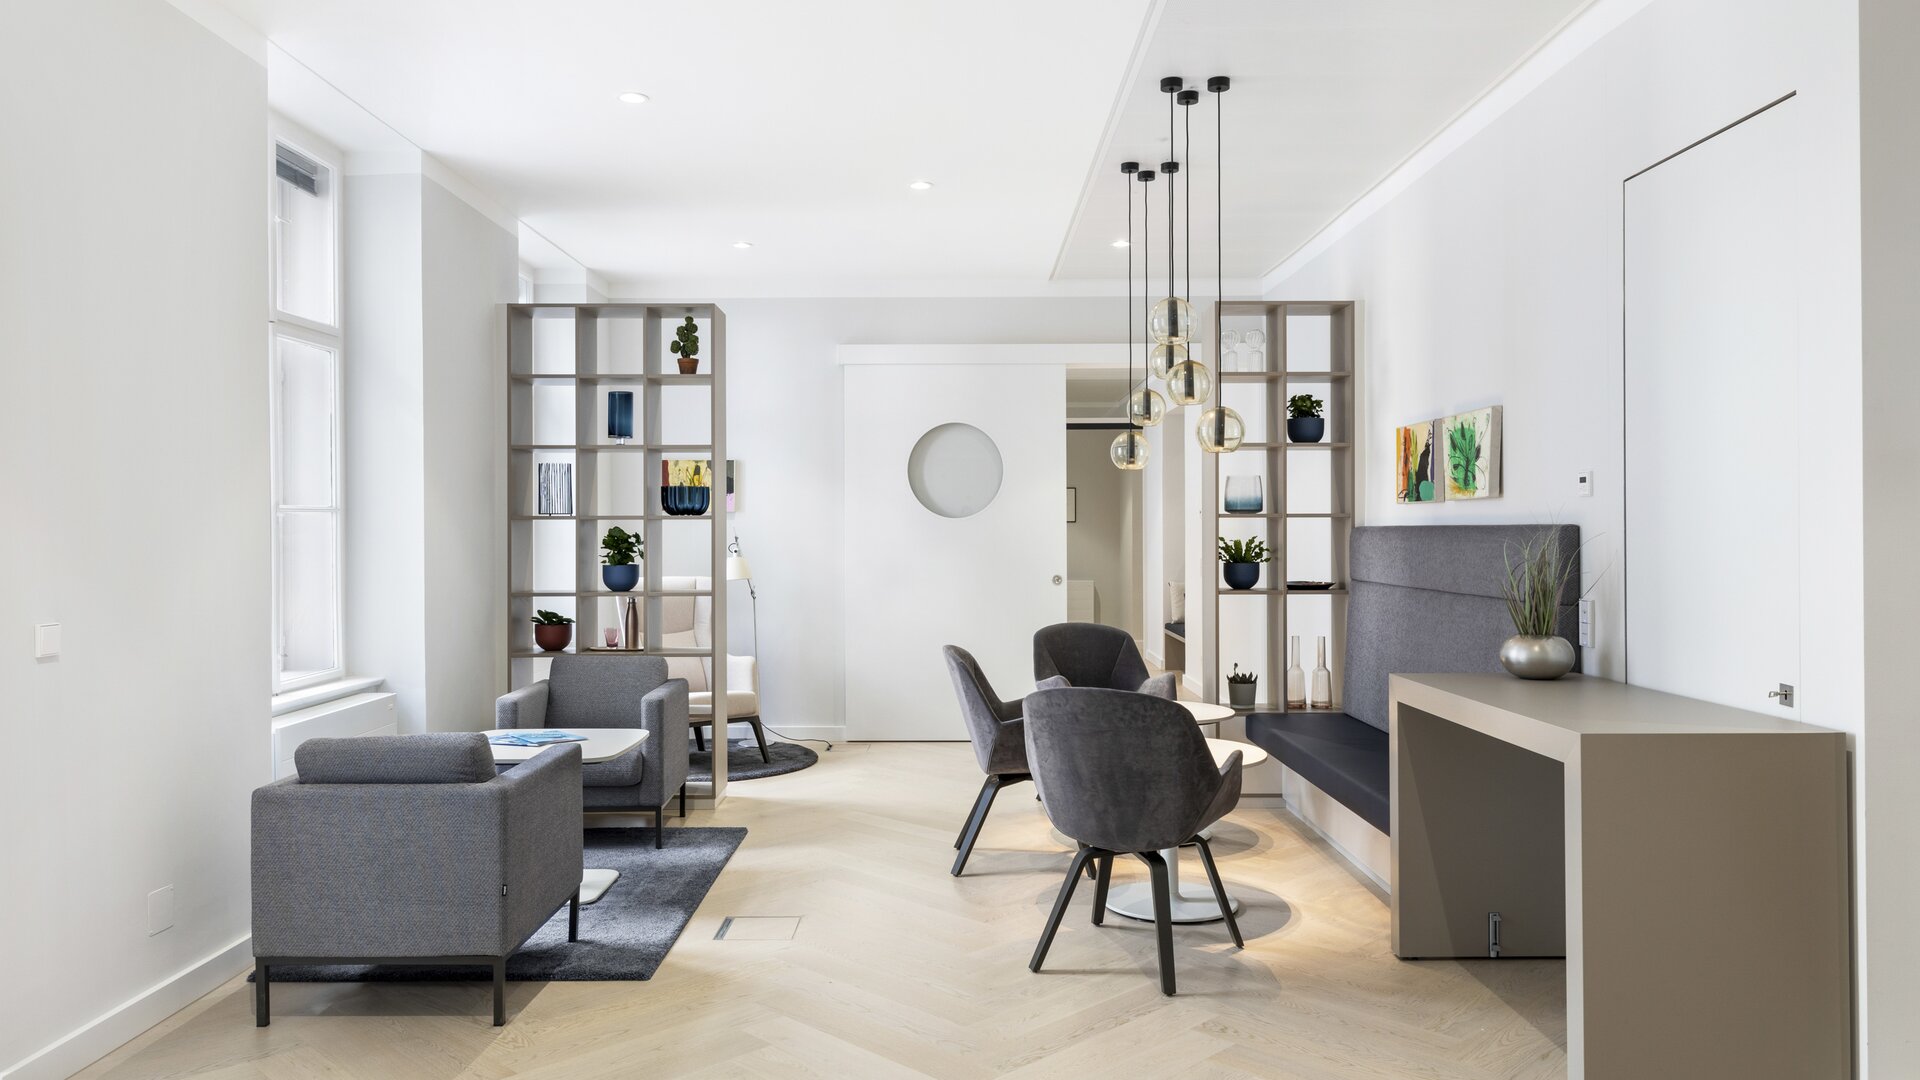 Espace lounge avec chaises grises et lampes suspendues. | © PicMyPlace